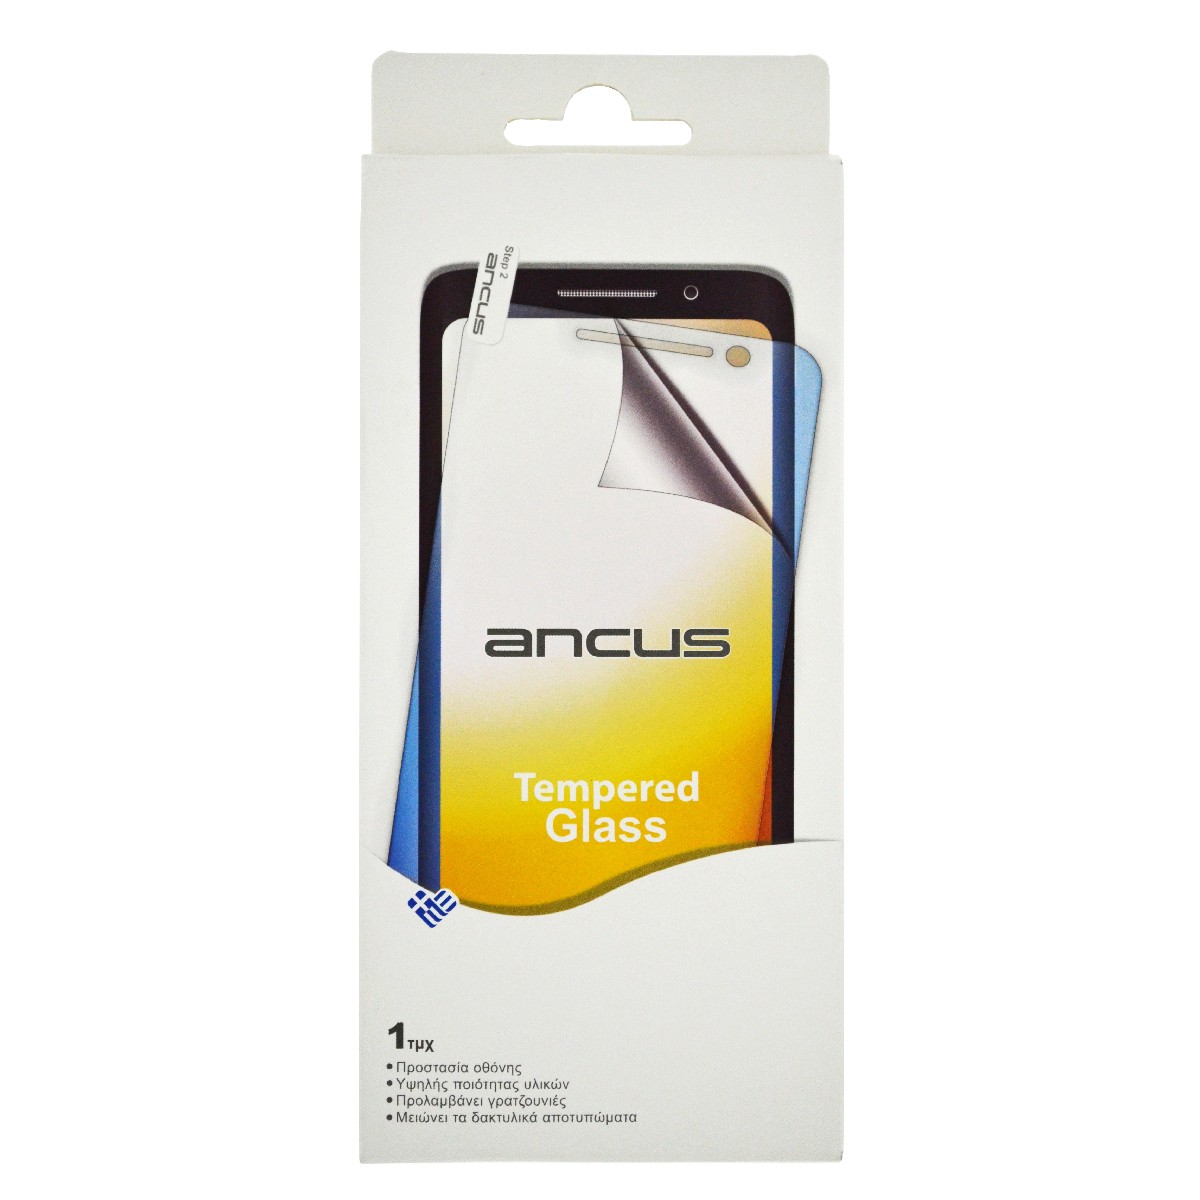 Tempered Glass Ancus 9H 0.33 mm για Apple iPhone 6 Plus/6S Plus/7 Plus/8 Plus Full Glue